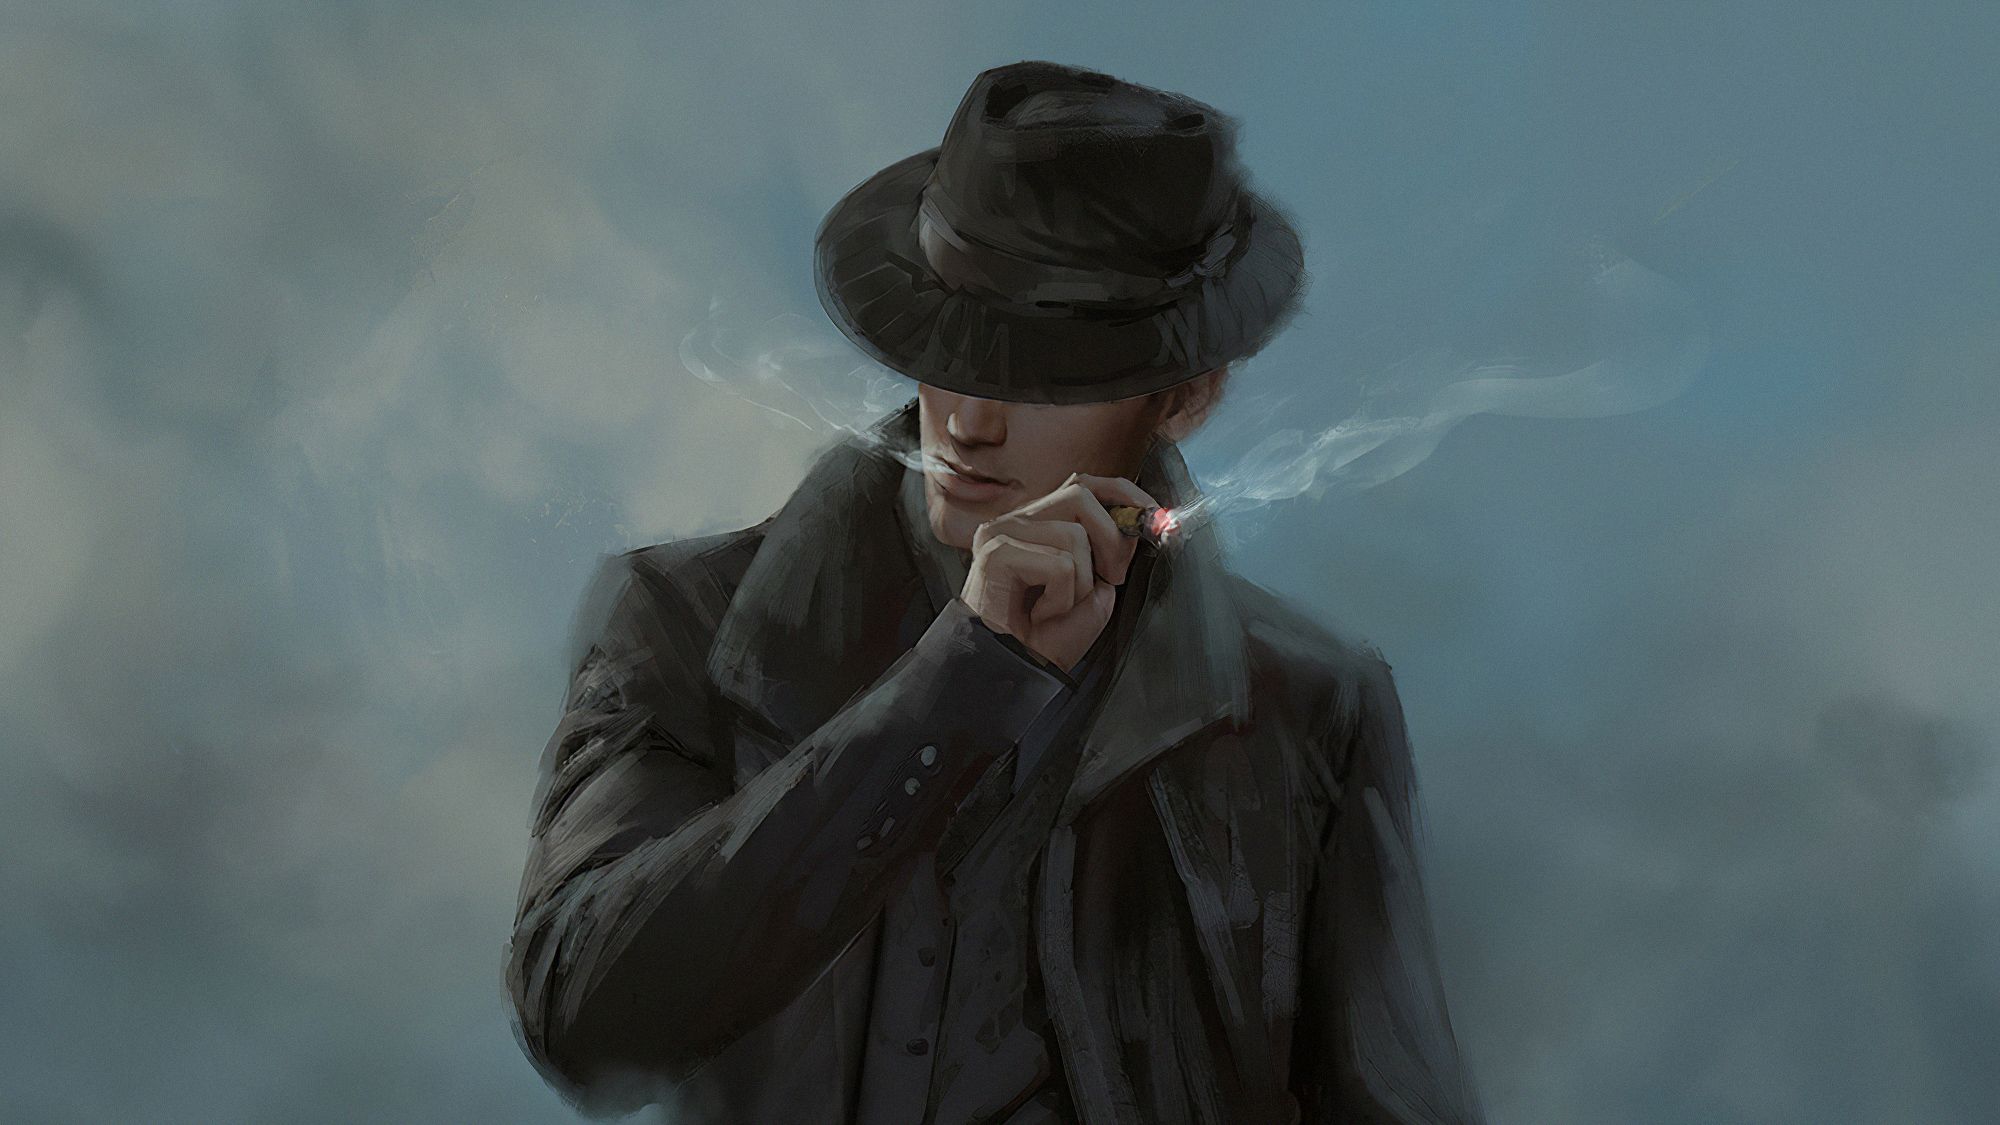 Hat Guy Smoking, HD Artist, 4k Wallpaper, Image, Background